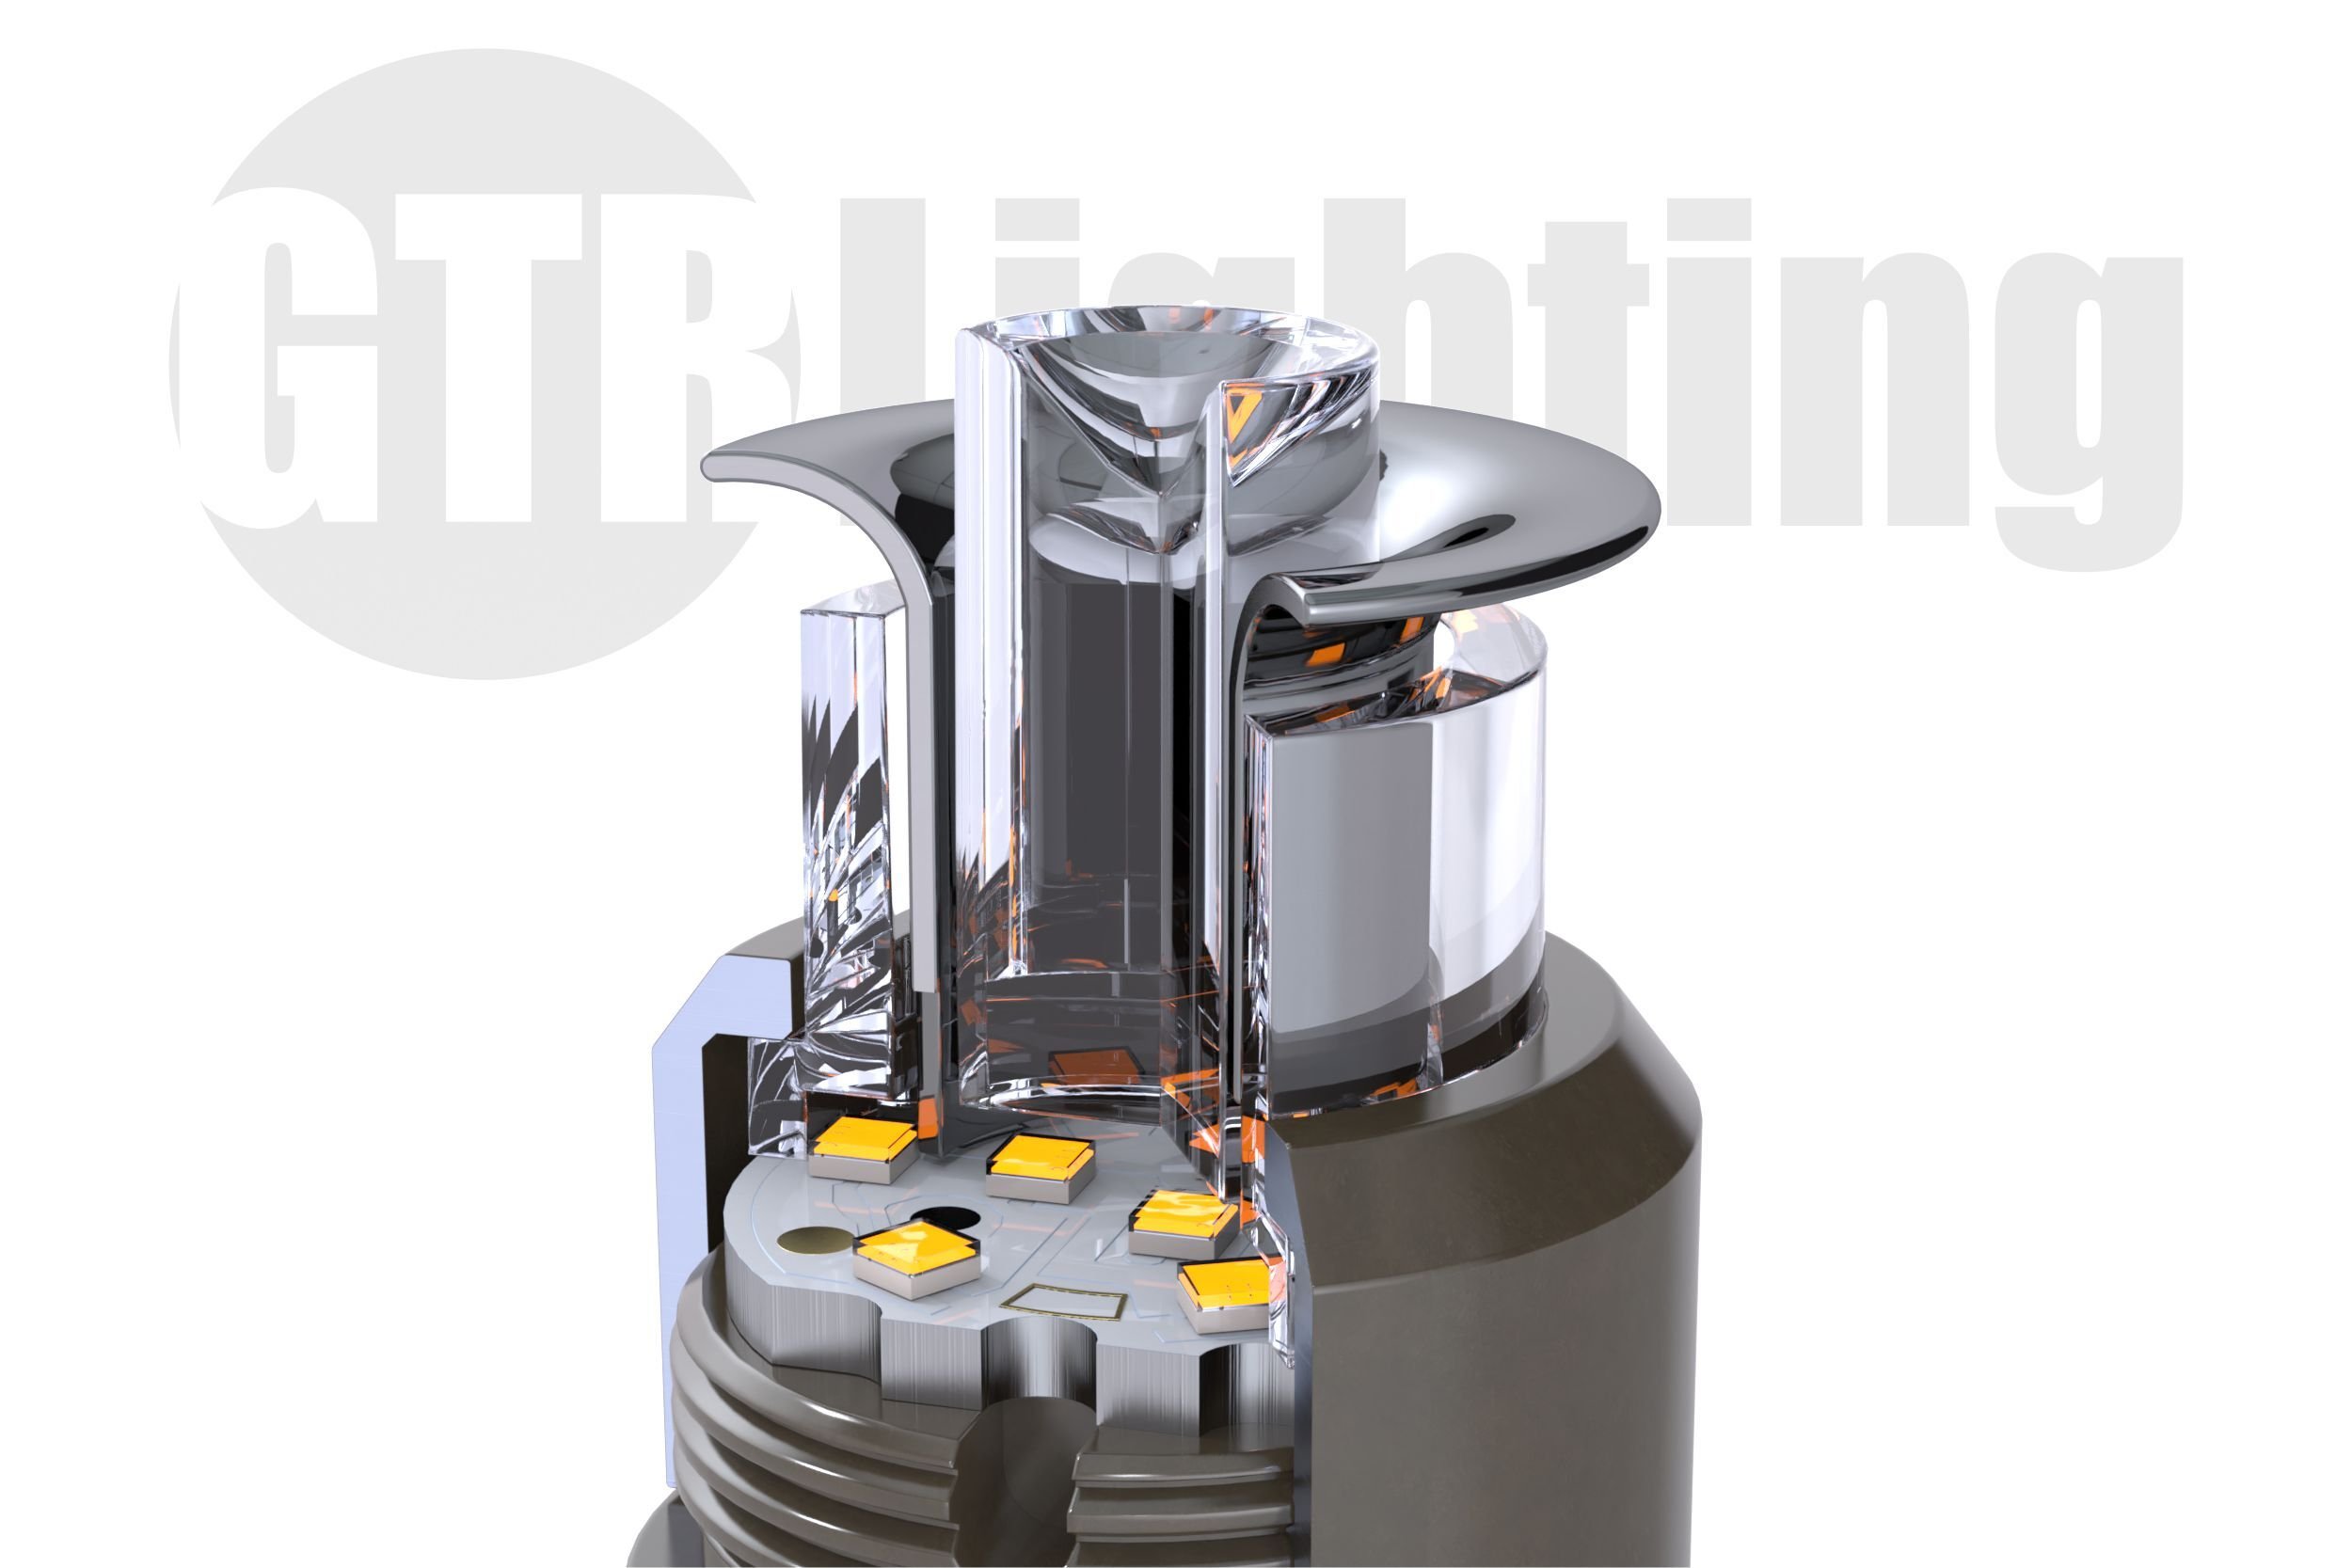 GTR i-LED IHR | Brightest LED Turn Signal Bulbs